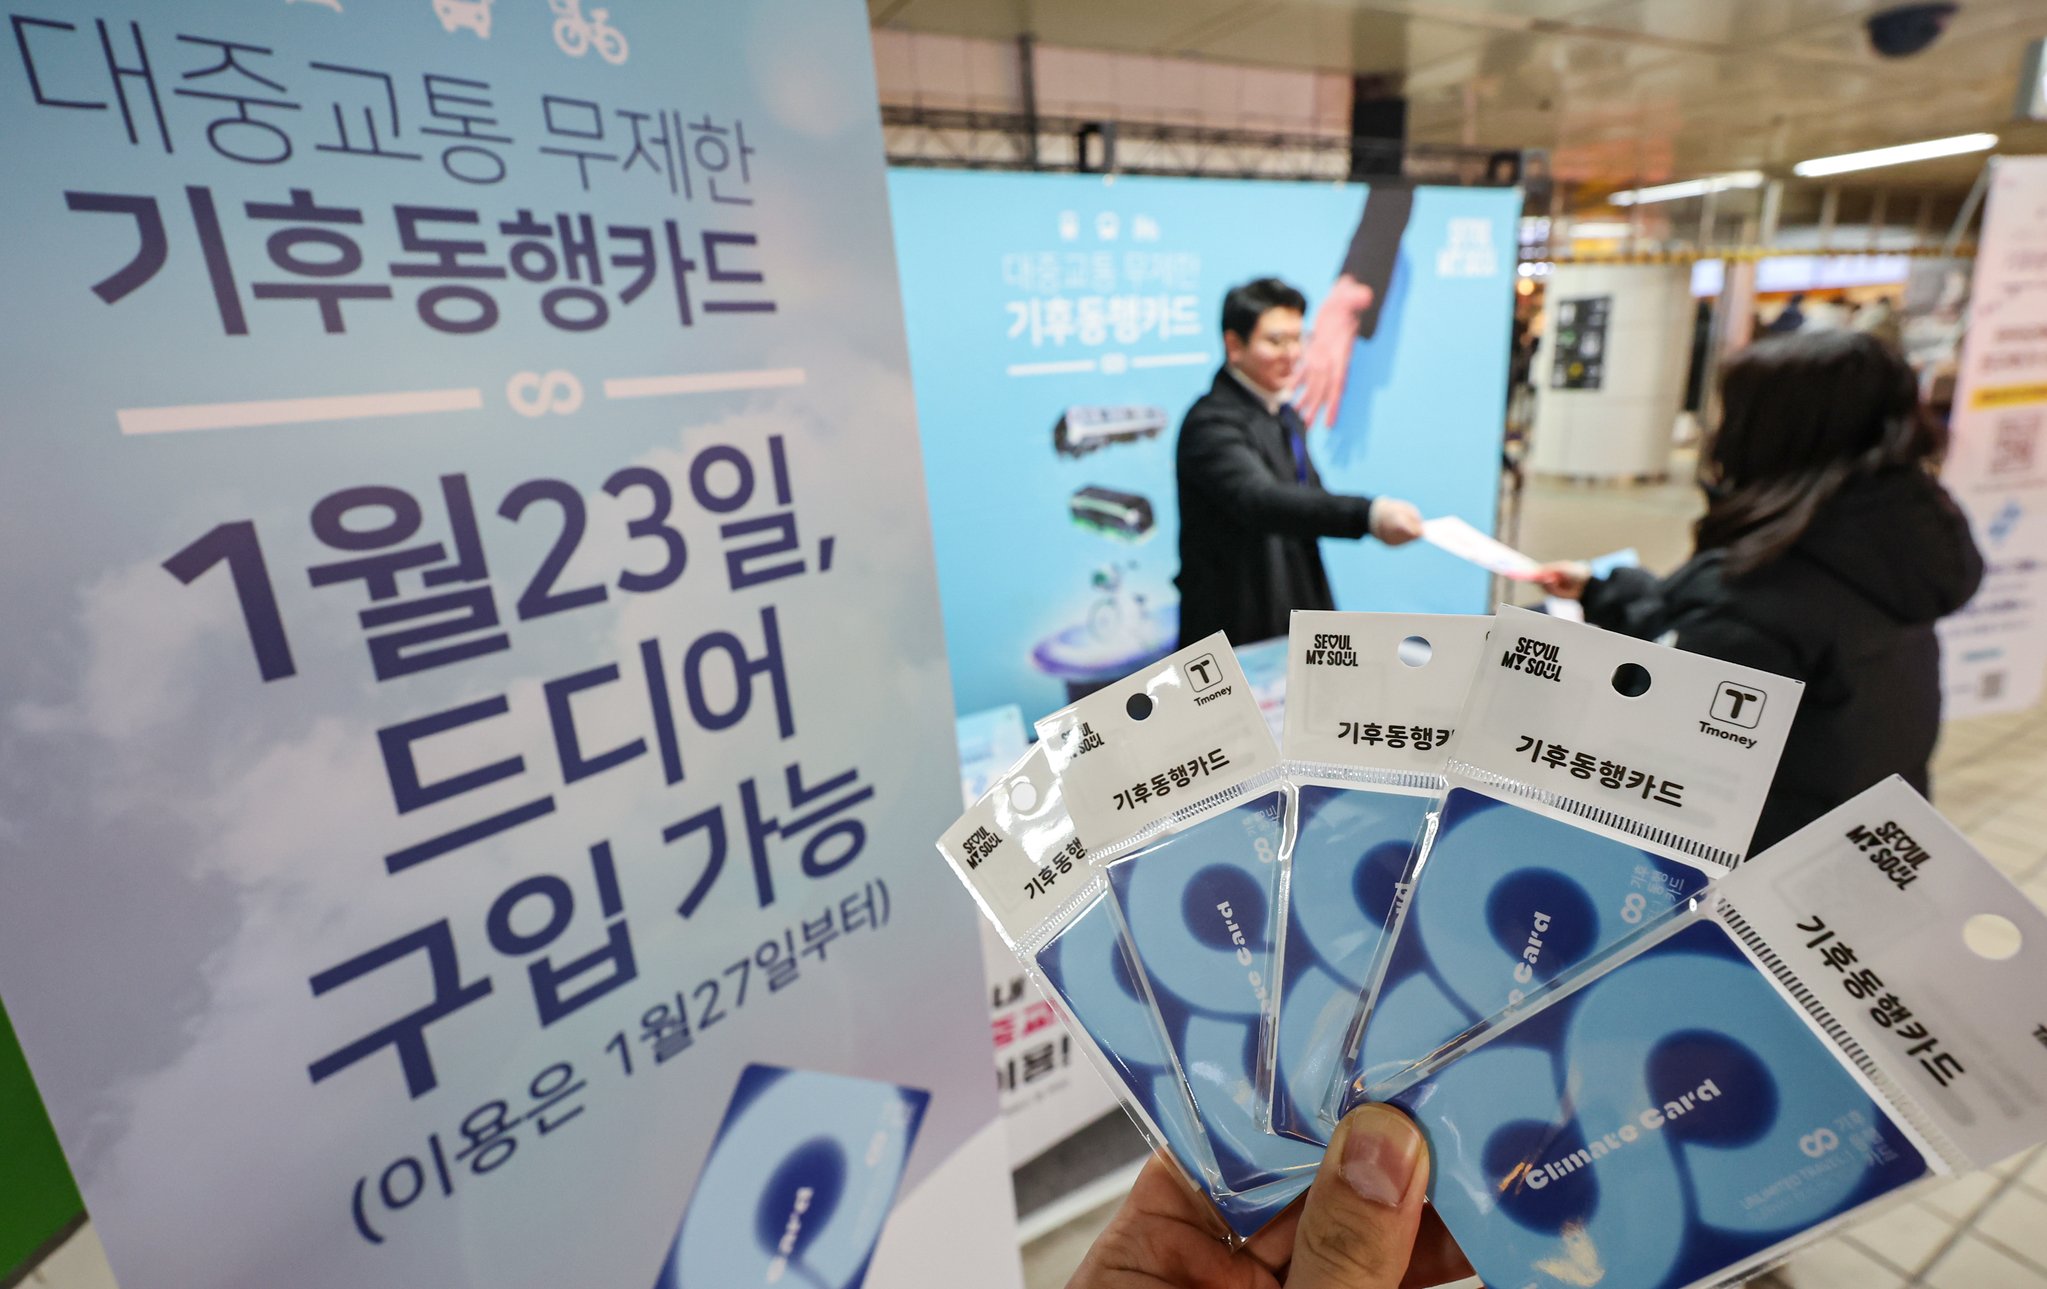 서울시의 대중교통 통합정기권 '기후동행카드' 판매가 23일 시작됐다. 뉴스1